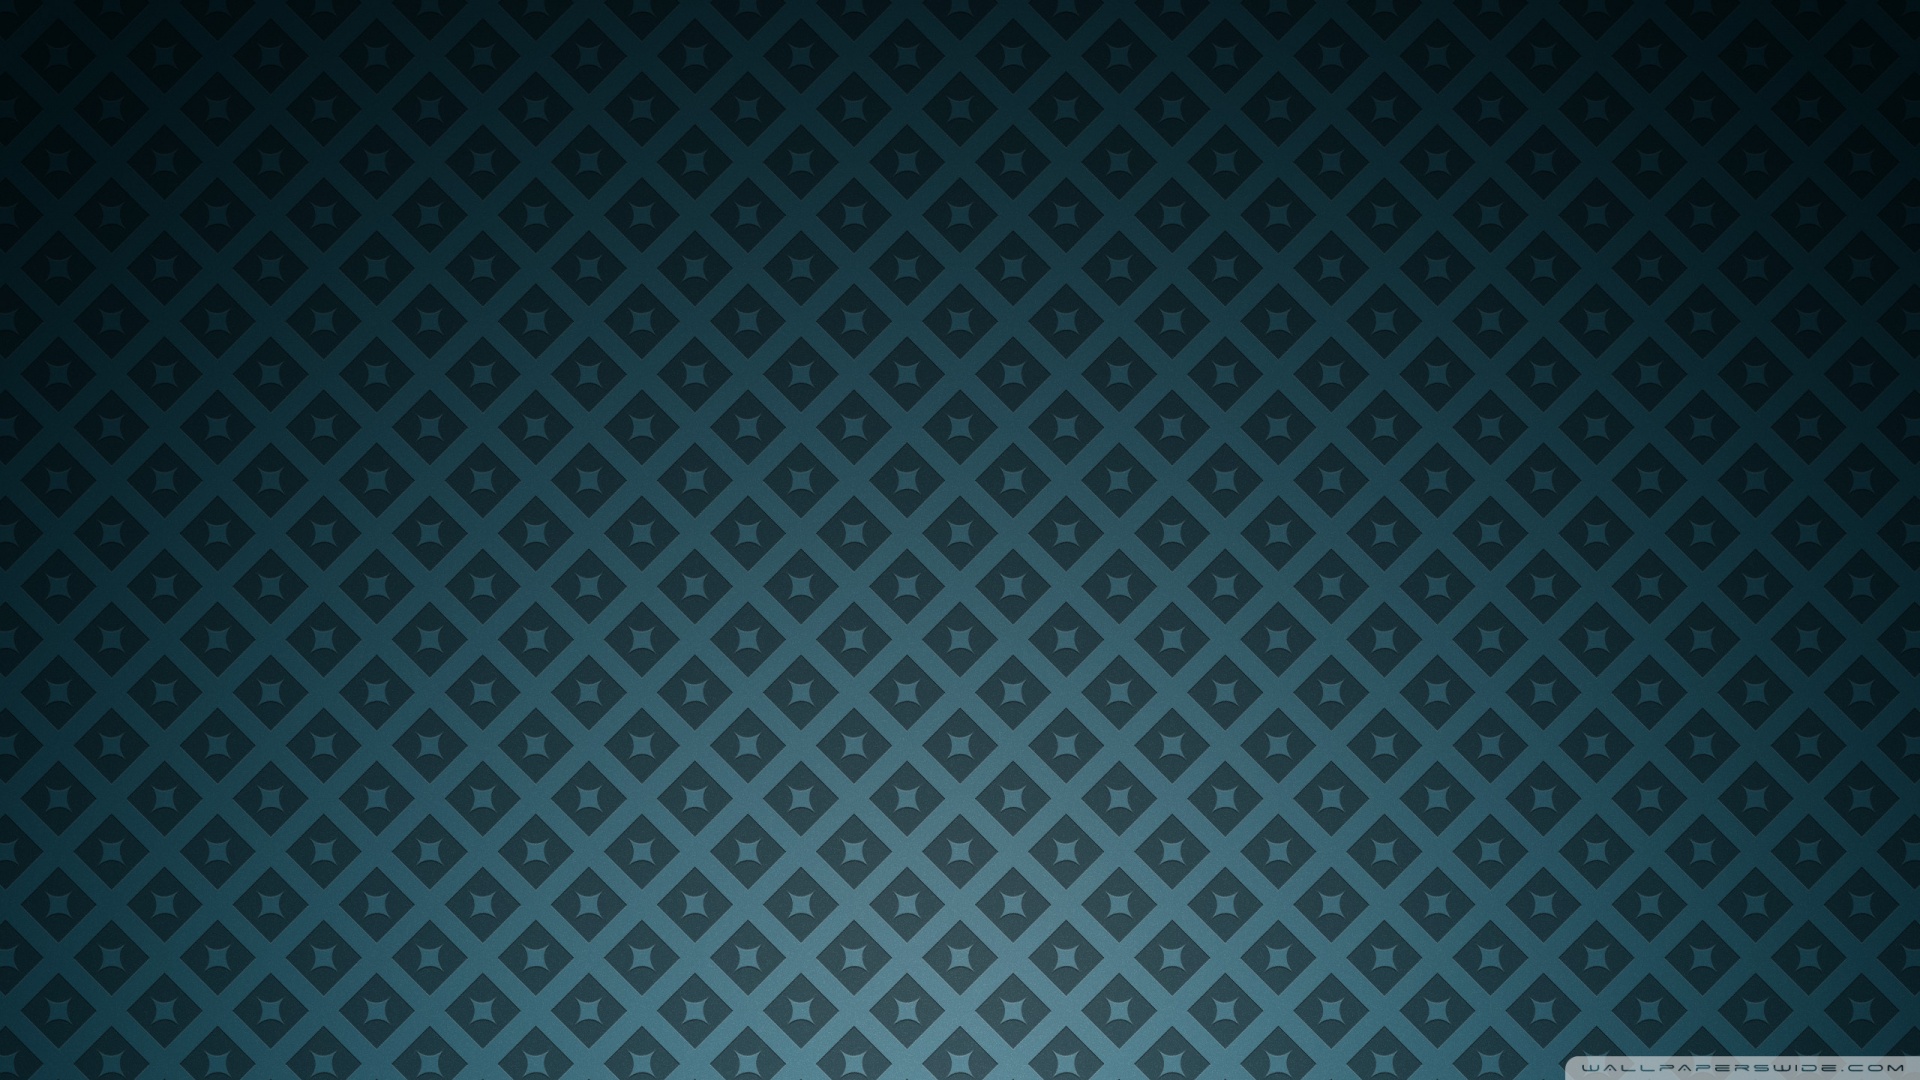 Green Stars Texture HD desktop wallpaper : High Definition 